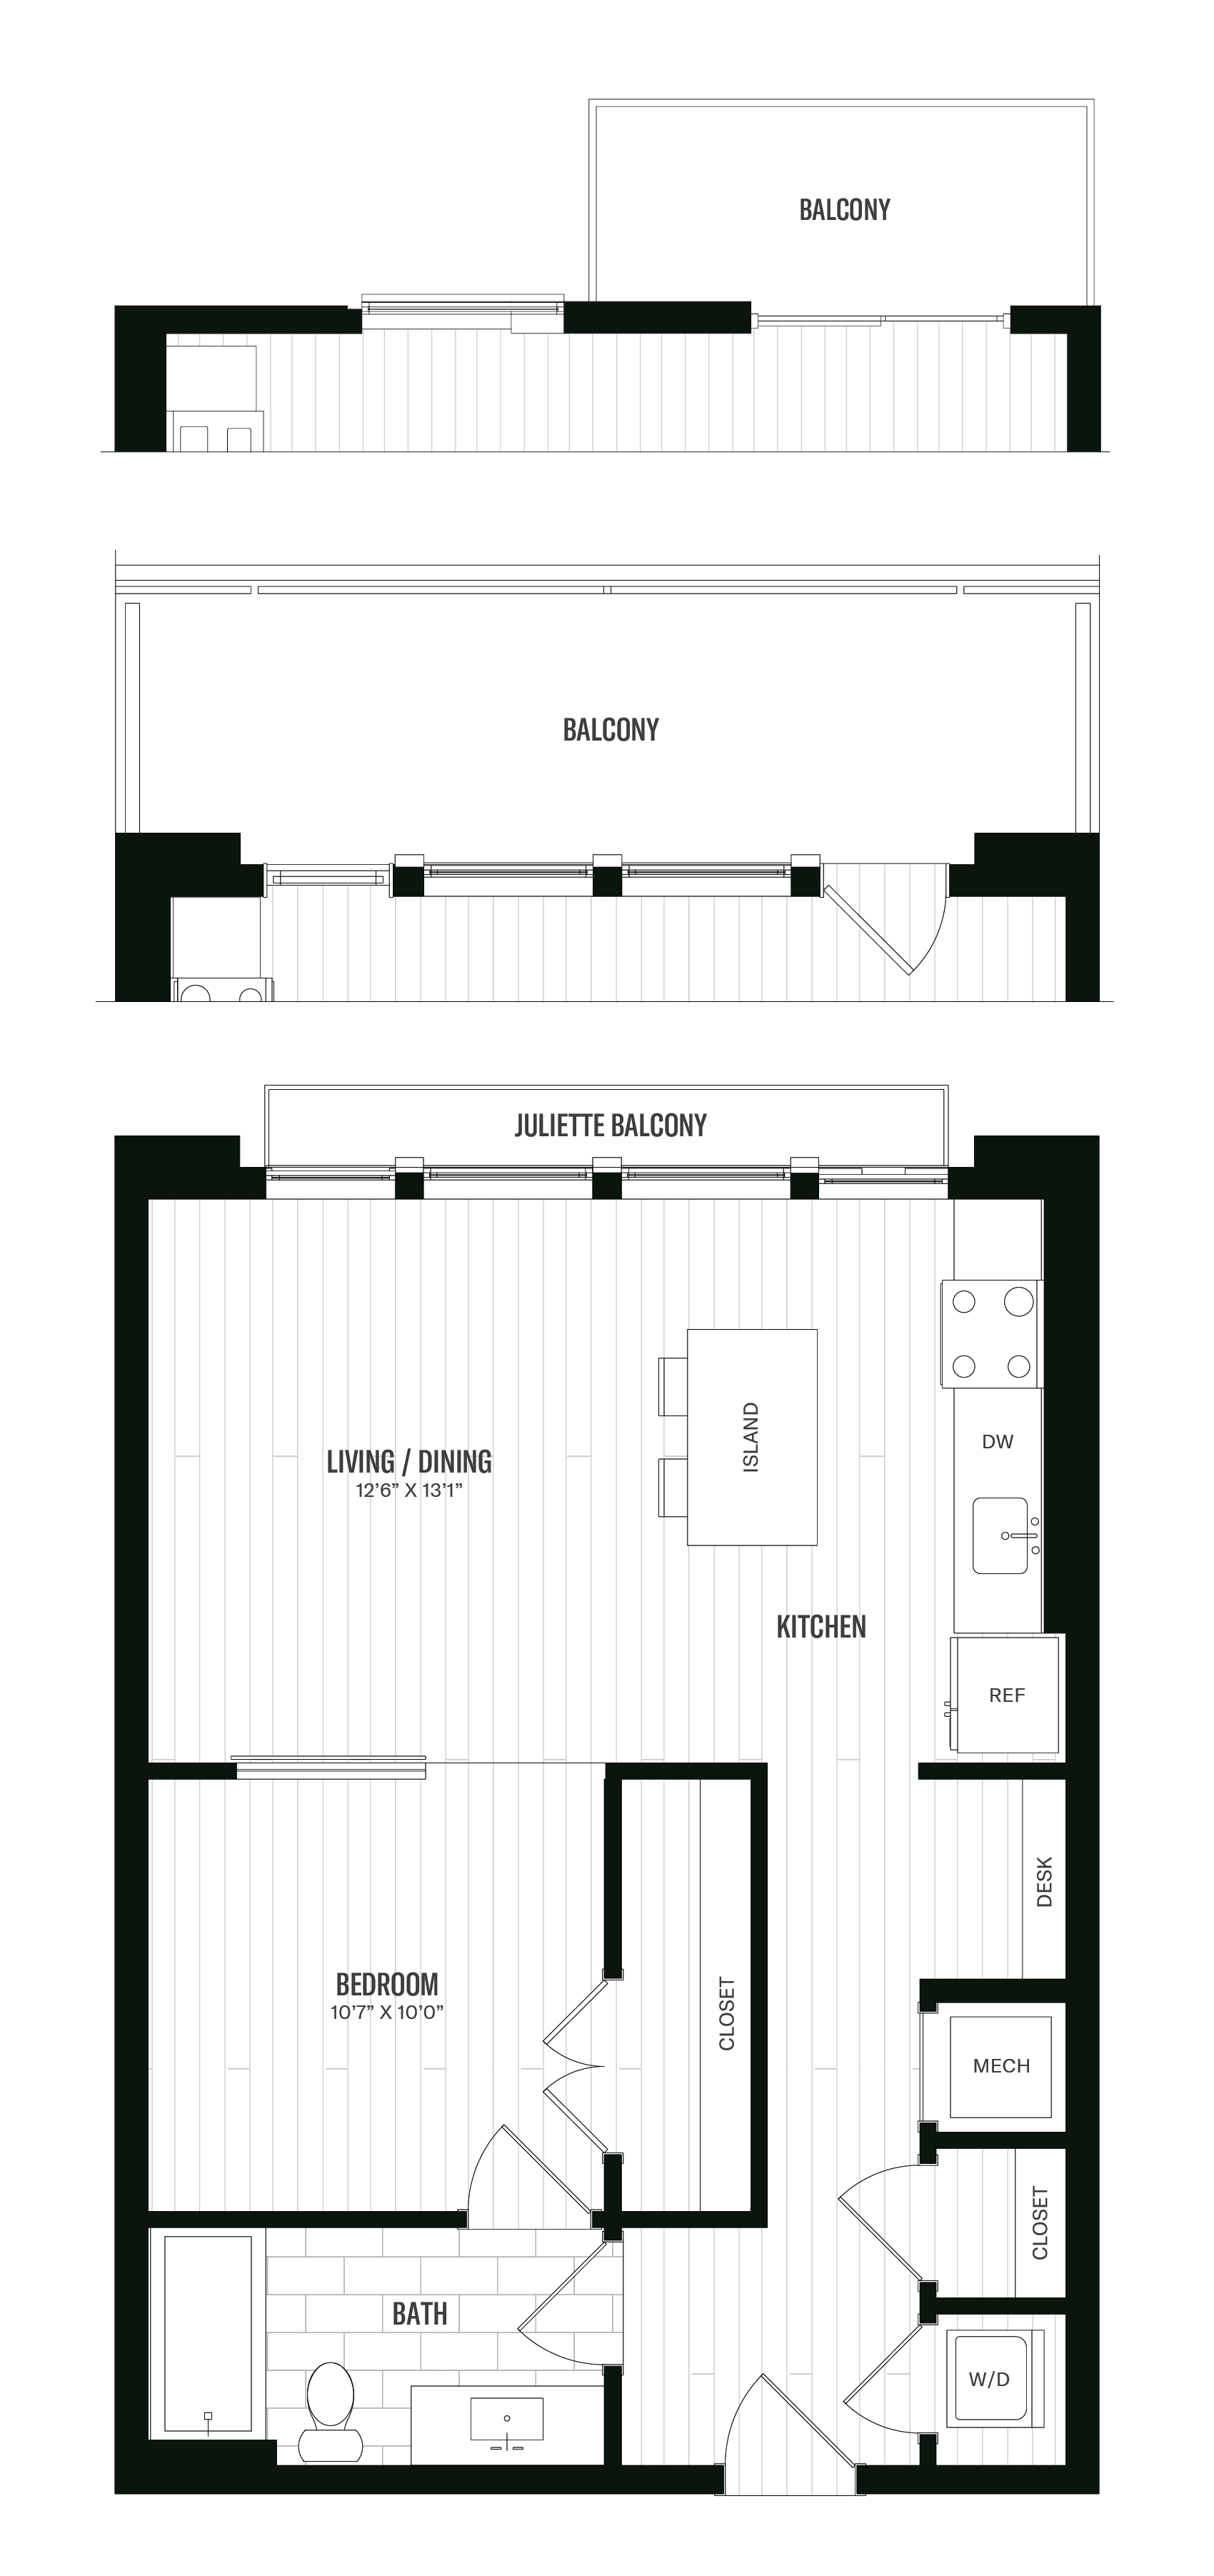 Floorplan image of unit 312